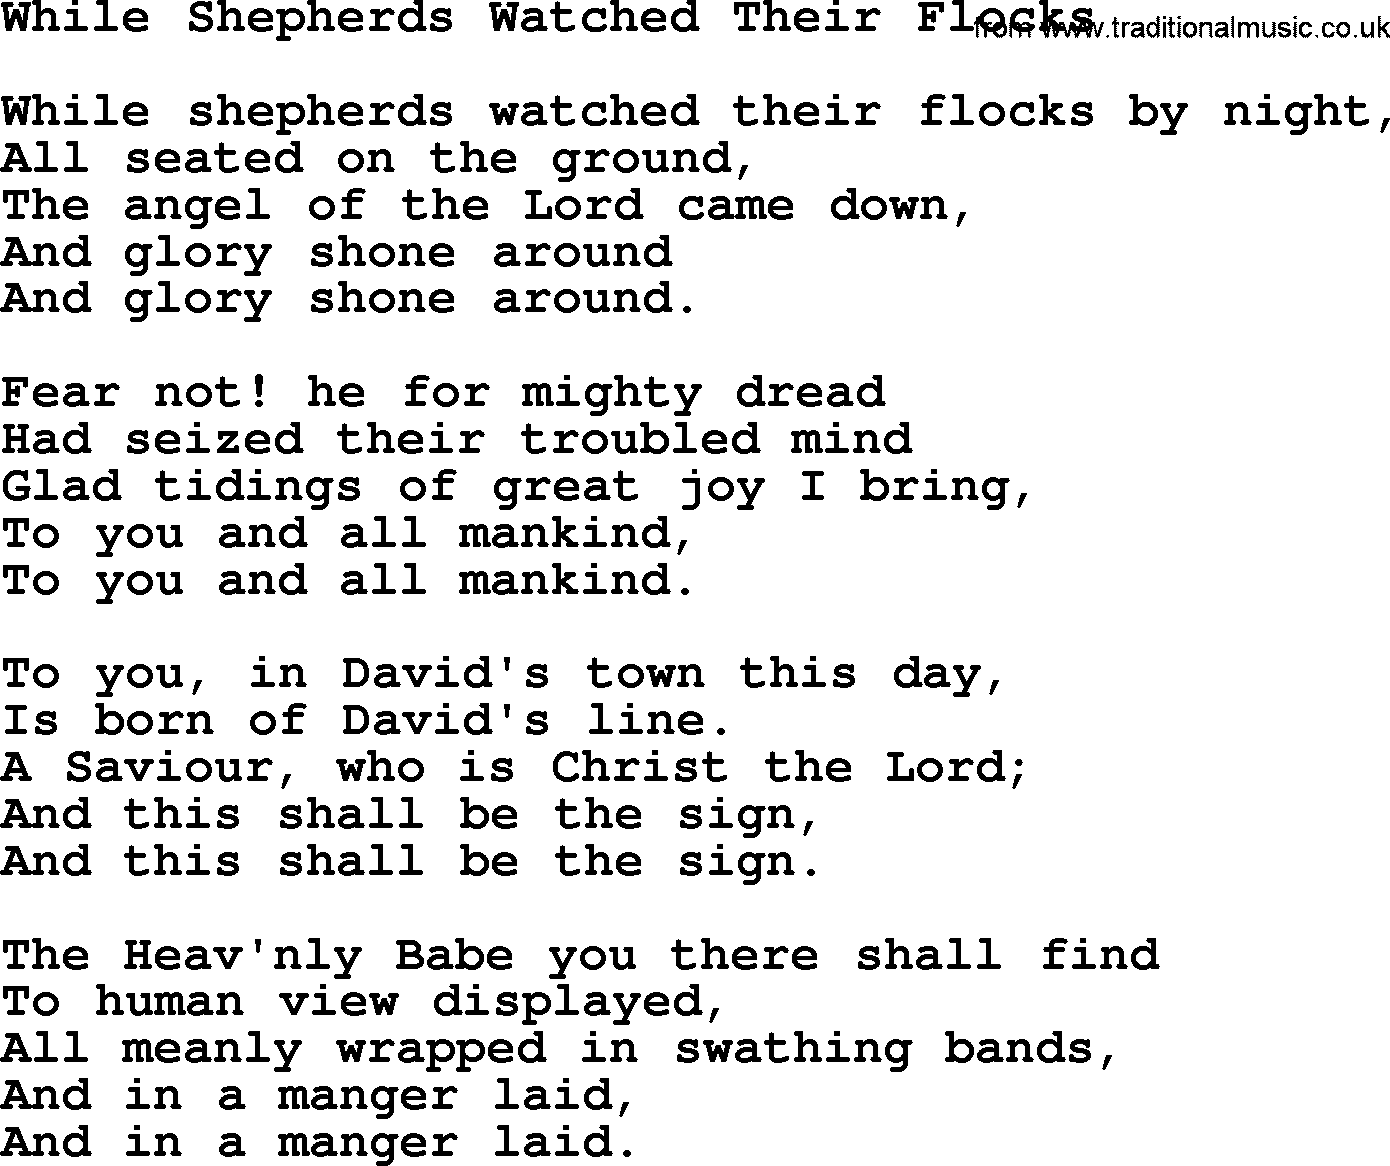 Catholic Hymn: While Shepherds Watched Their Flocks lyrics with PDF